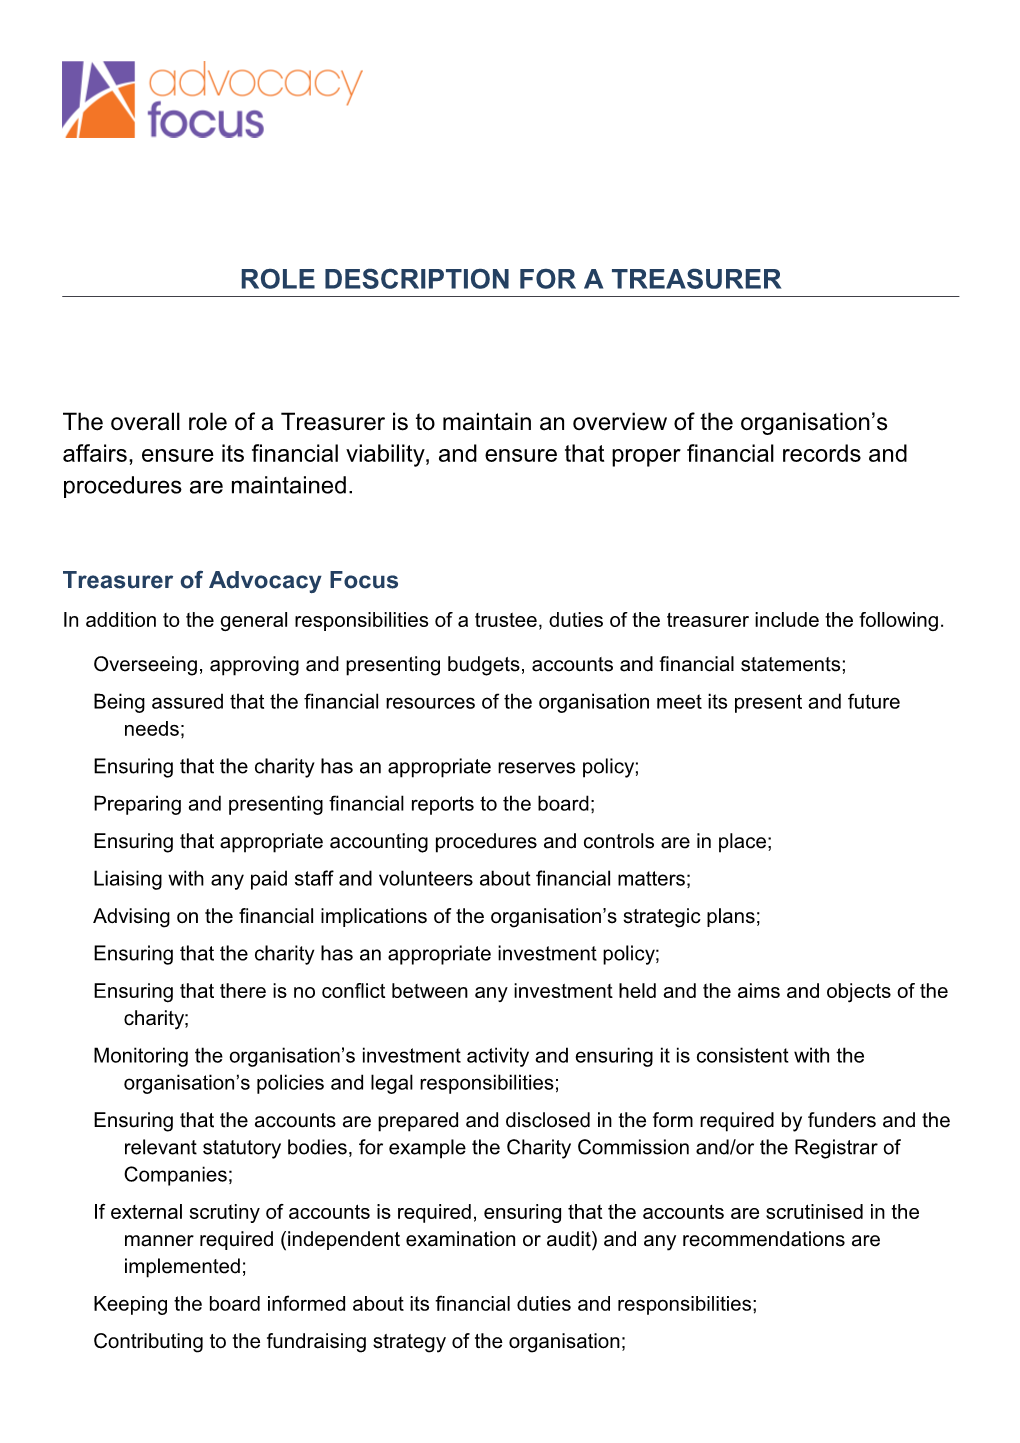 Role Description for a Treasurer